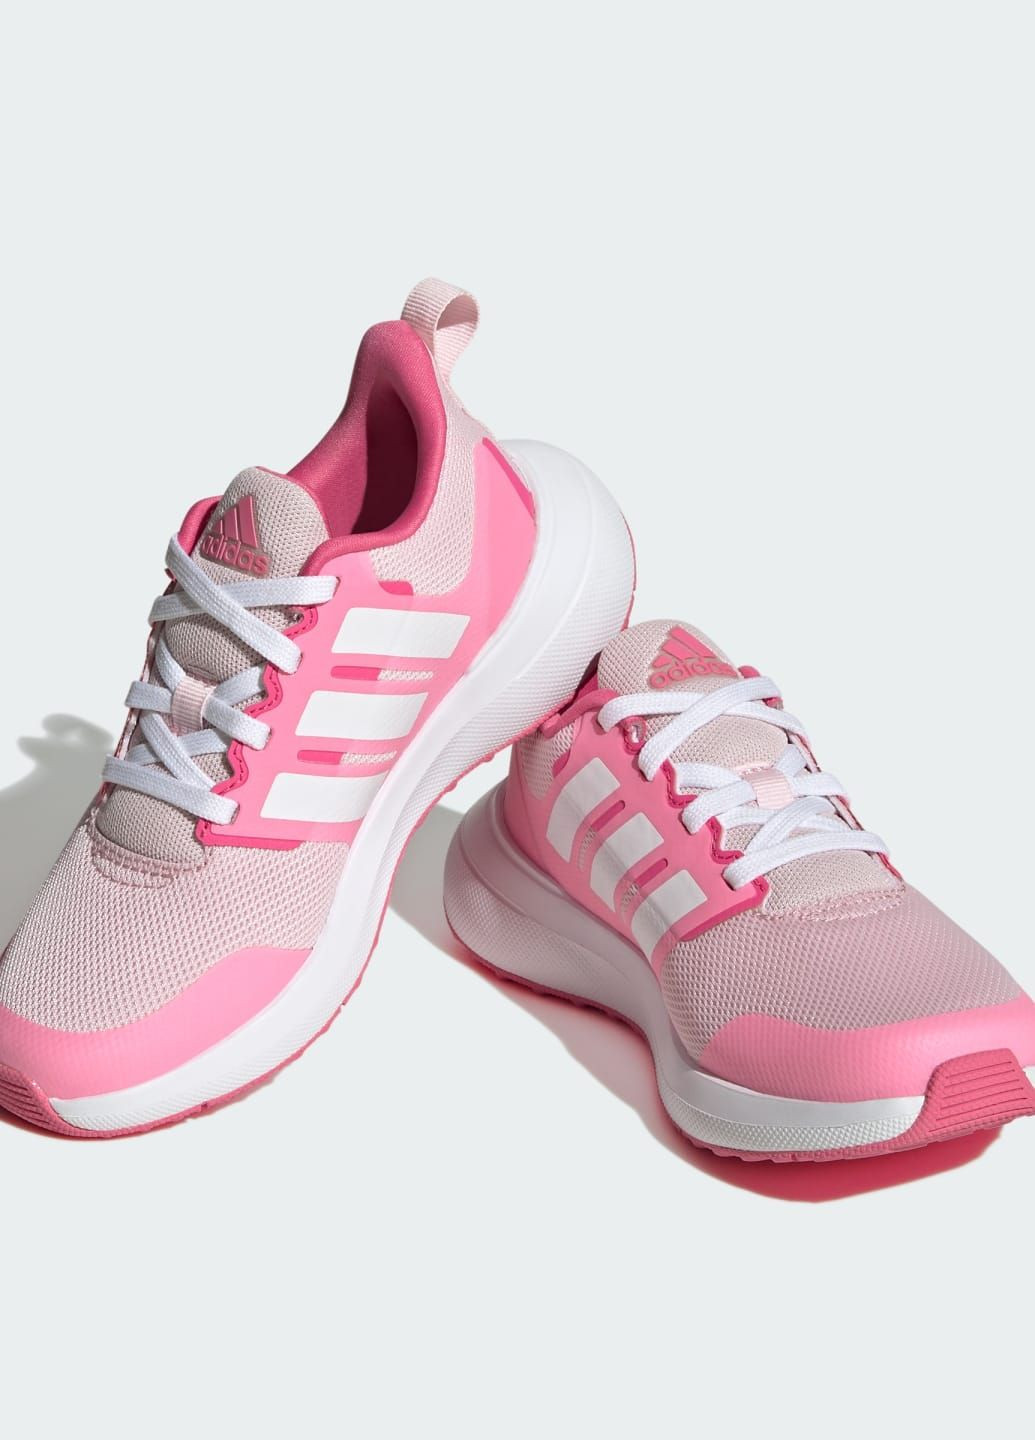 Розовые всесезонные кроссовки fortarun 2.0 cloudfoam lace adidas